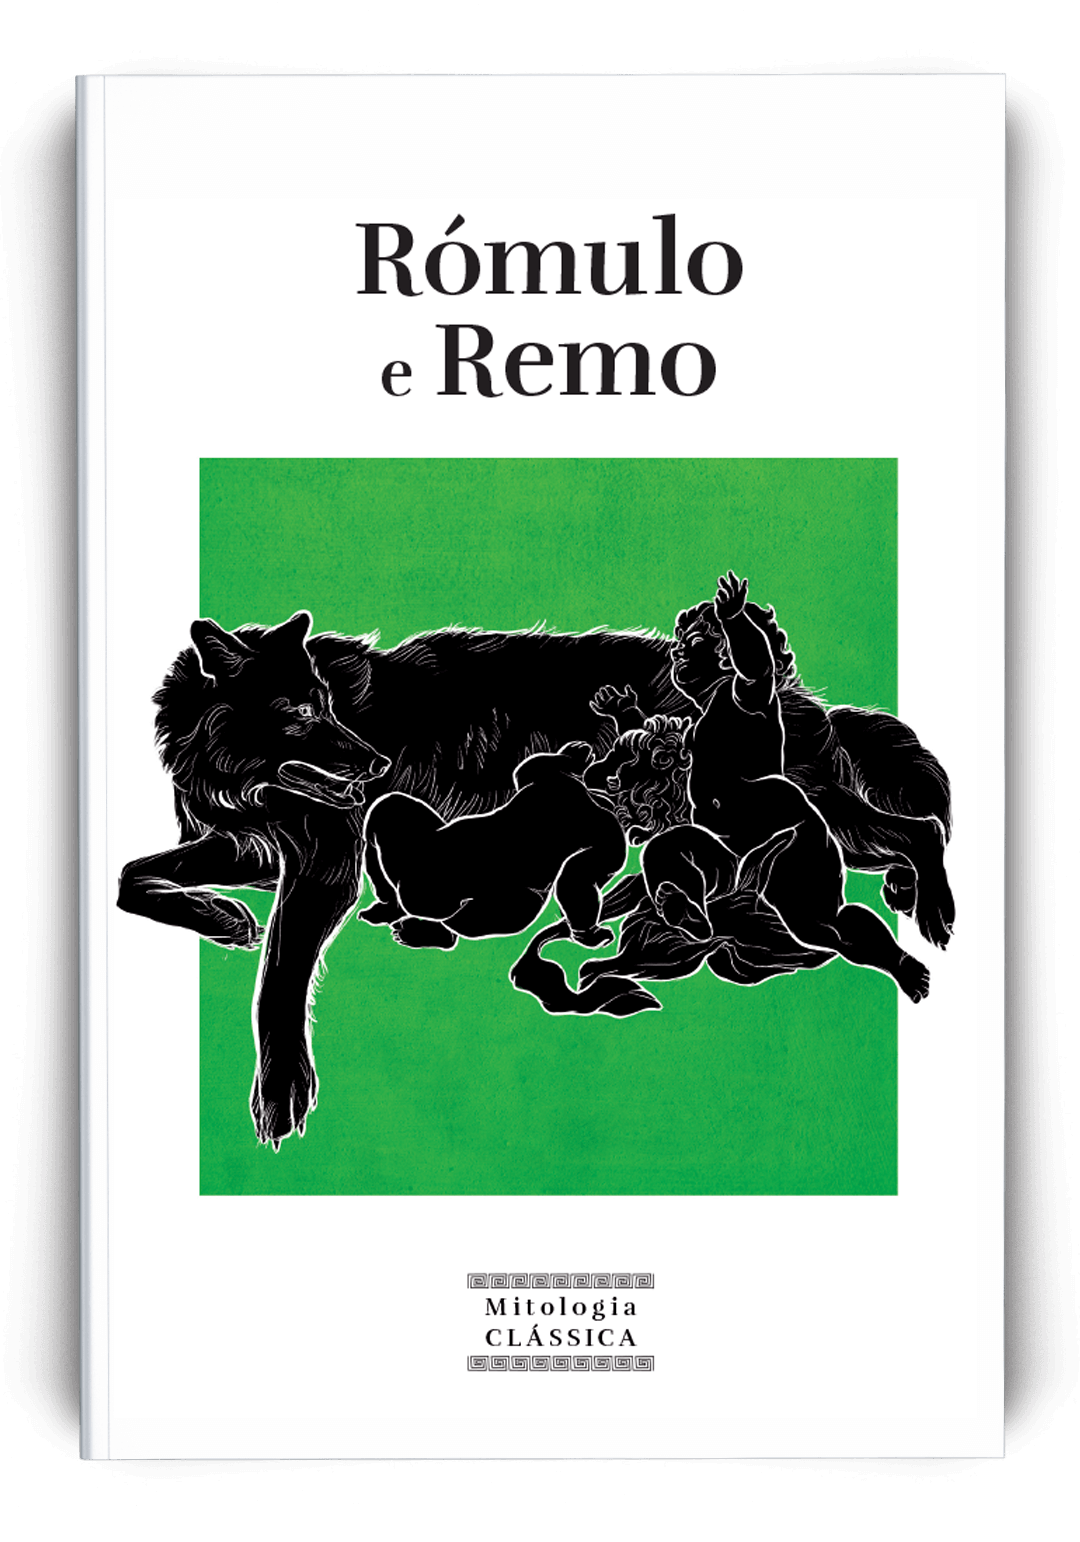 Rómulo e Remo